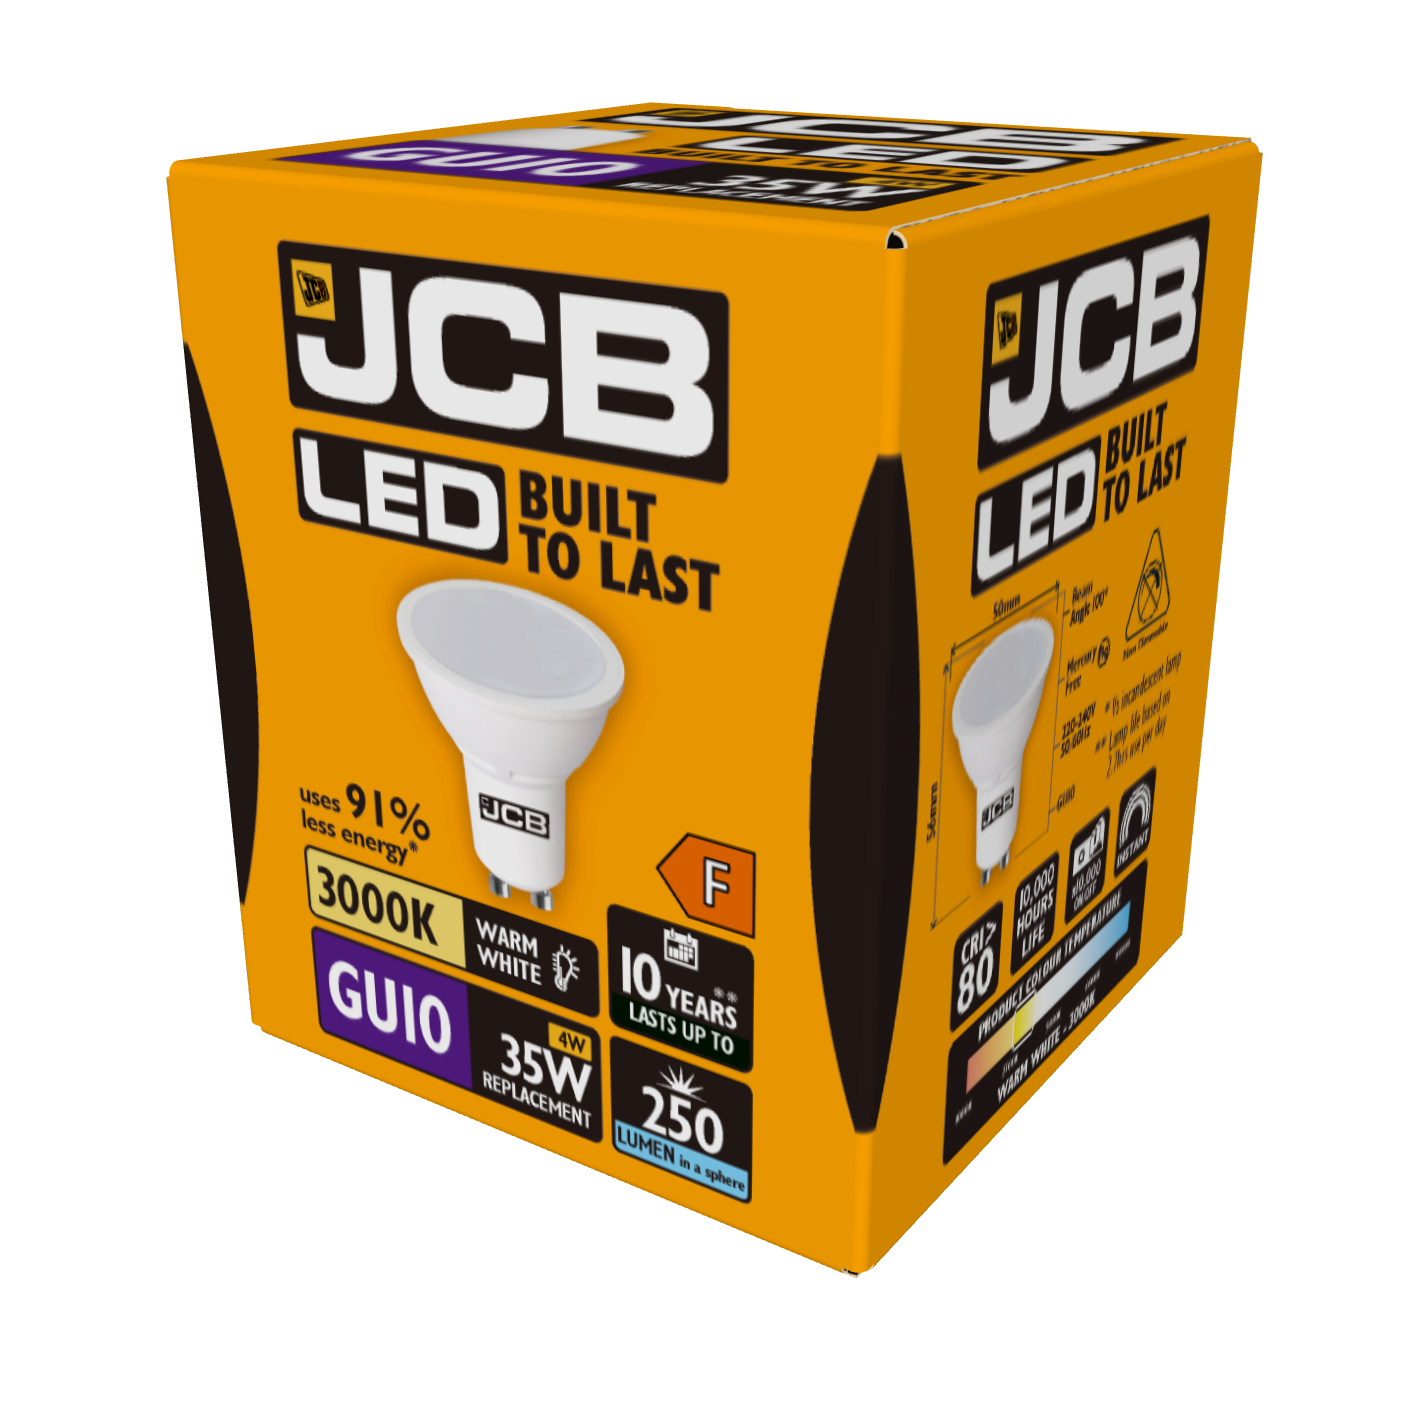 JCB LED GU10 250lm 4W 3.000K (Warmweiß), Packung mit 1 Stück